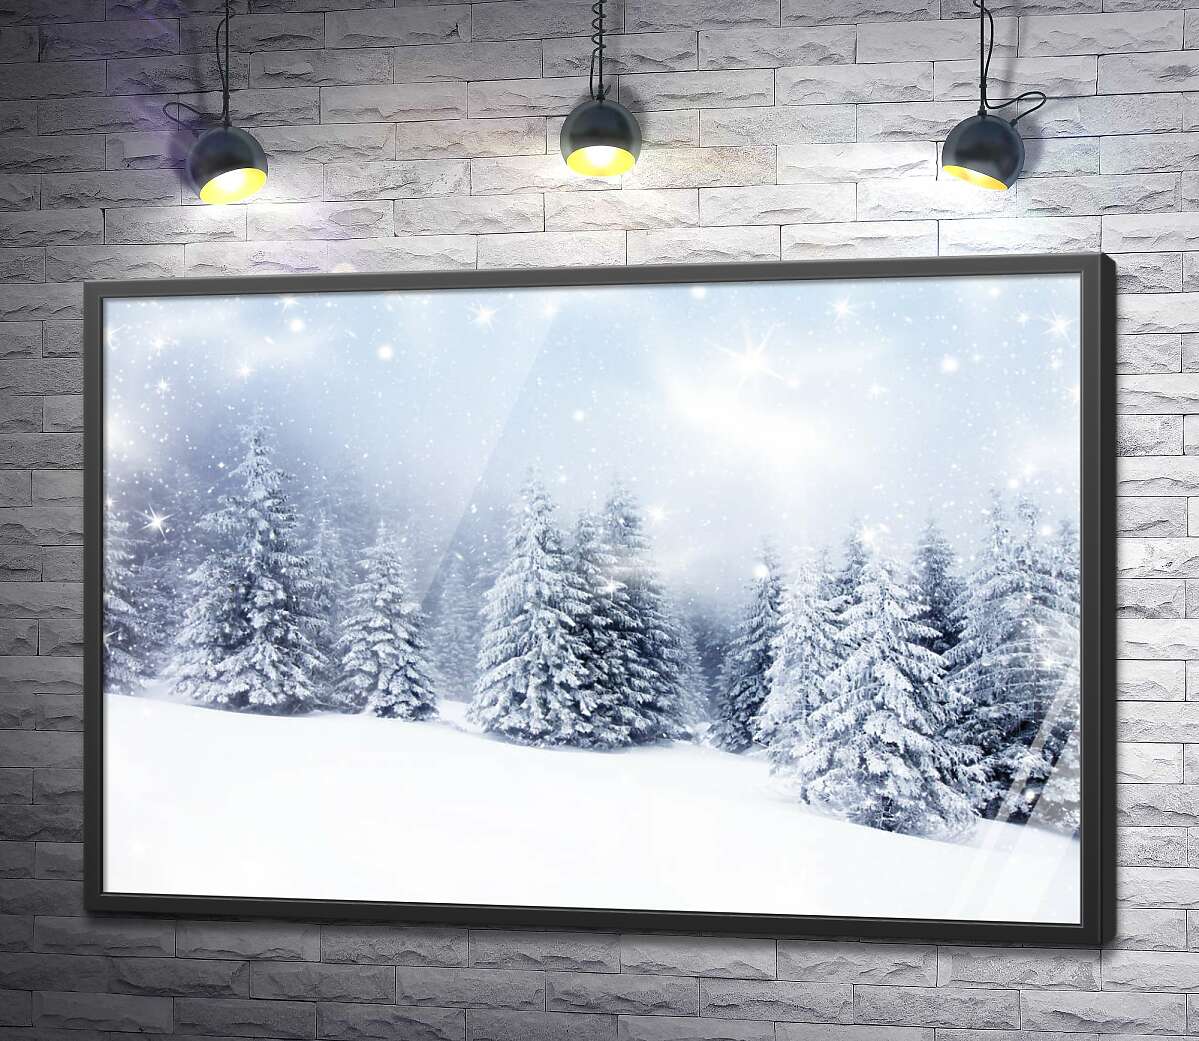 постер Снег белым покровом стелется между елок